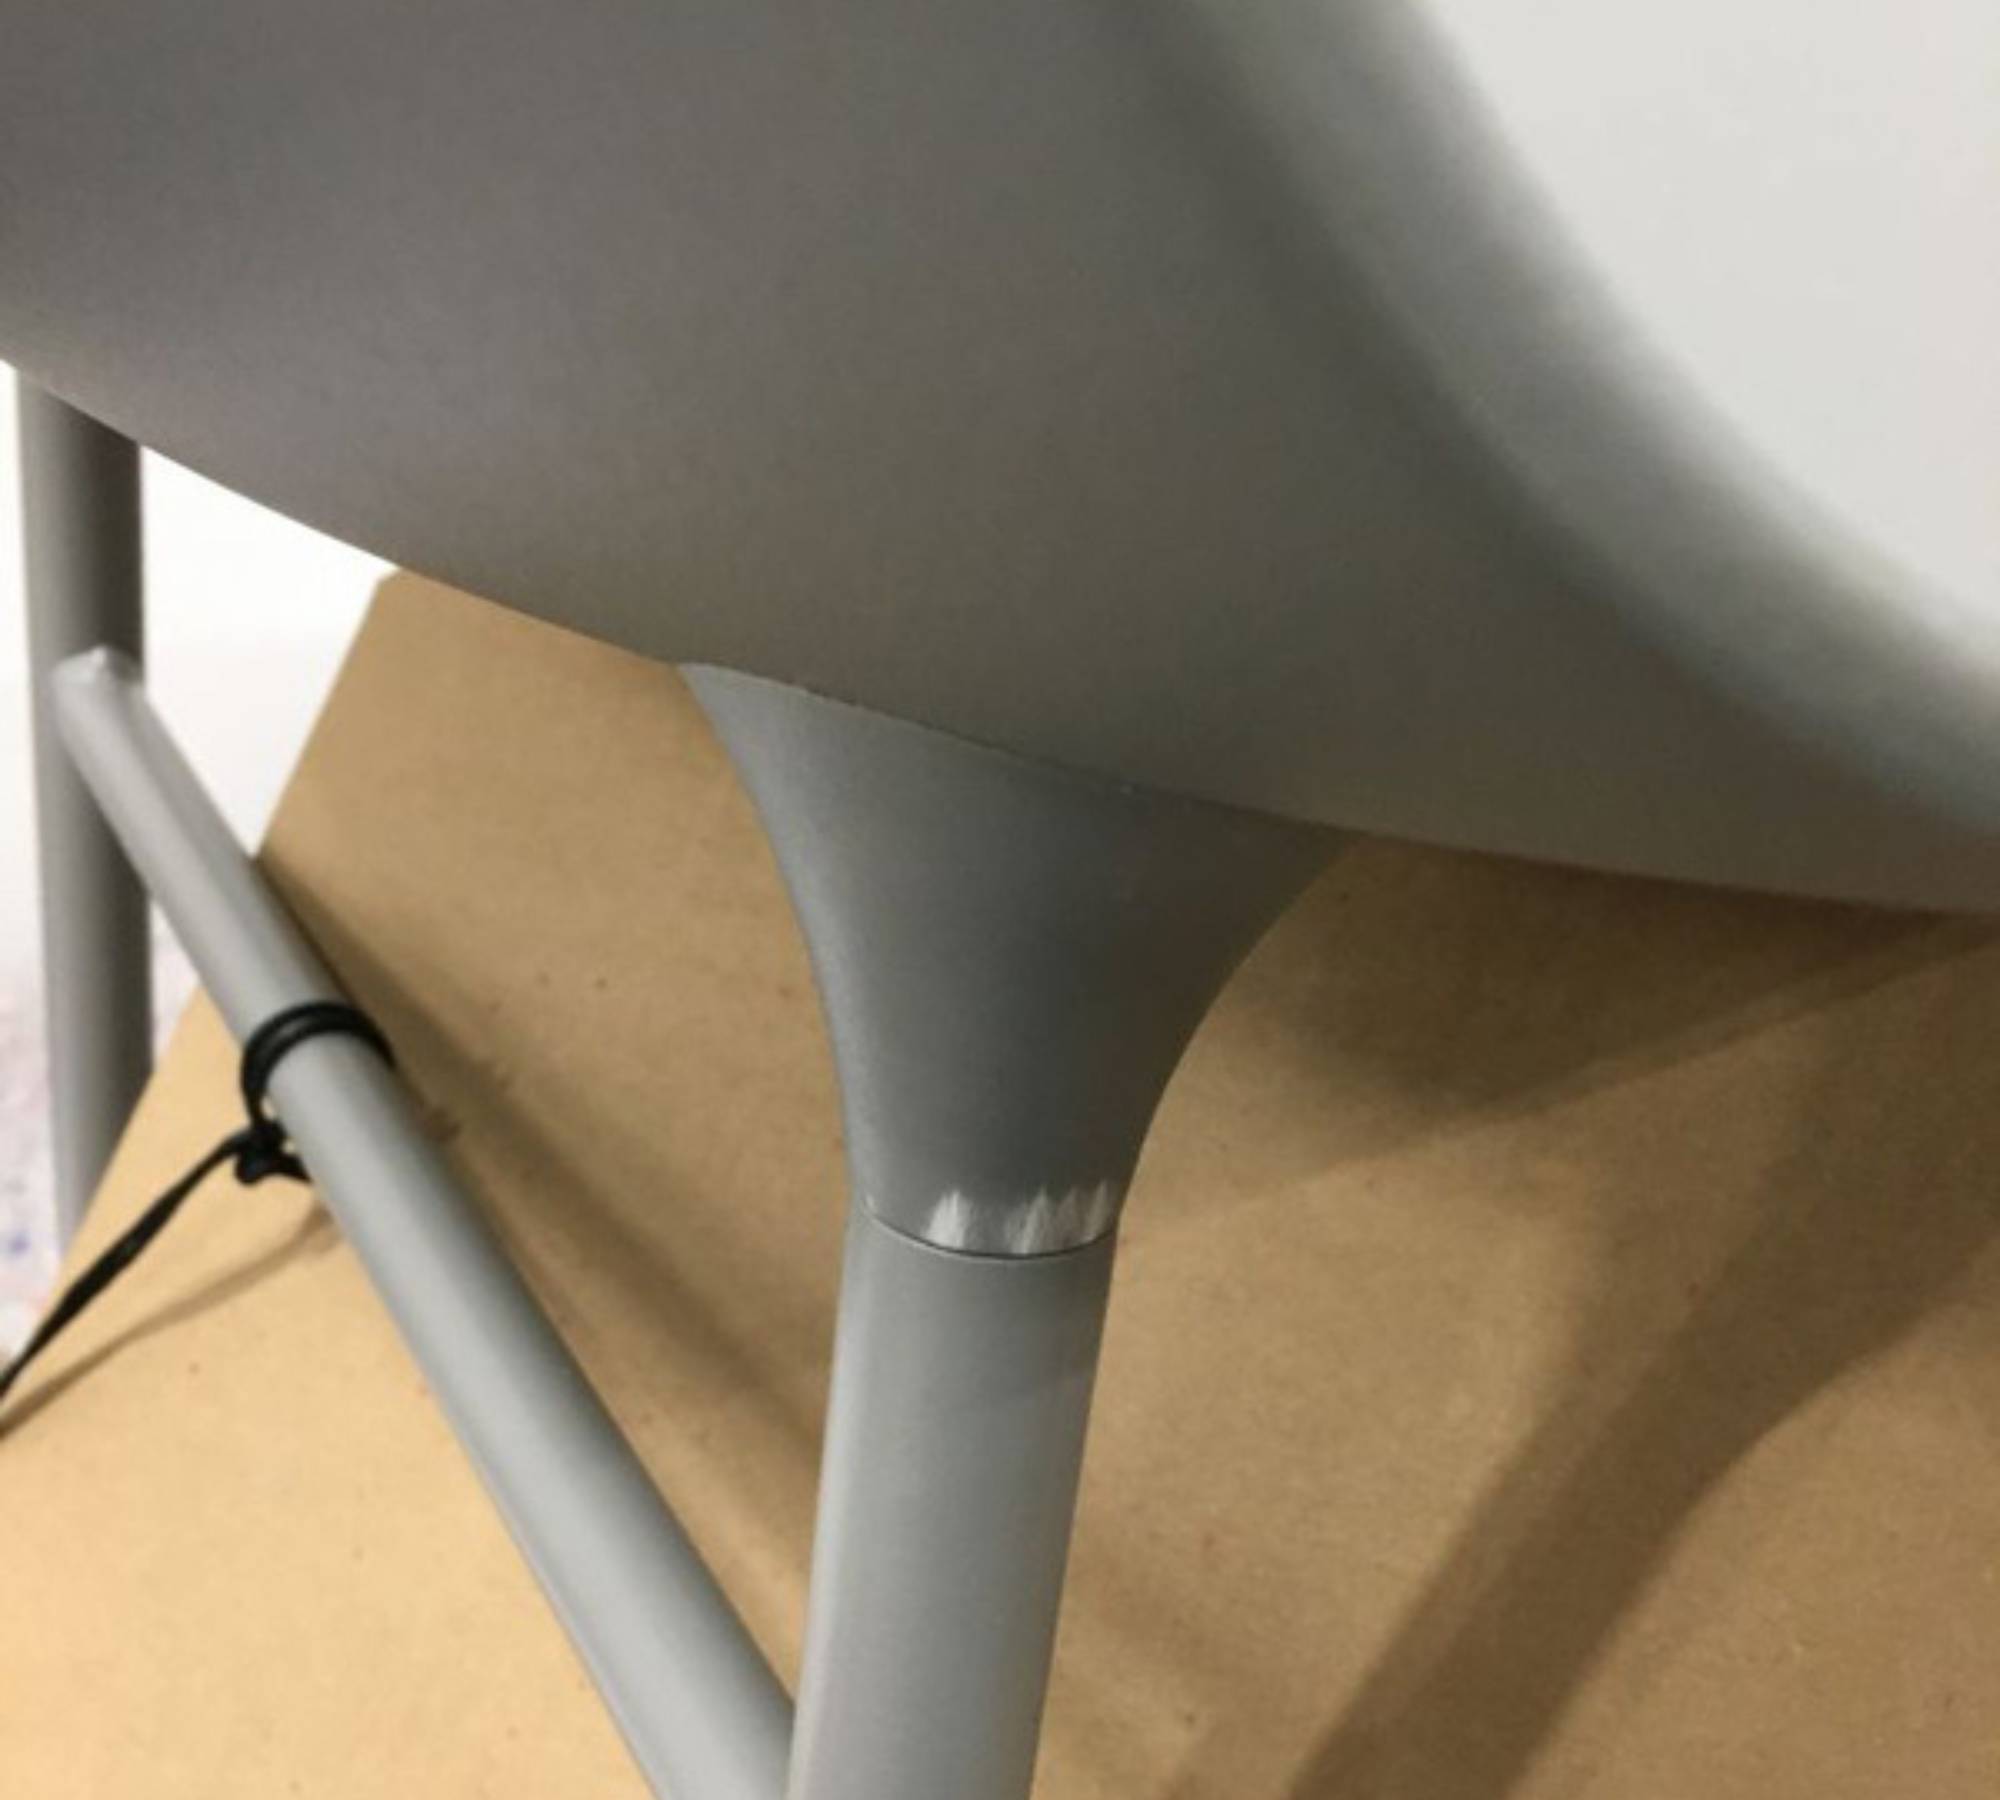 Form Stuhl Metall Kunststoff Grau